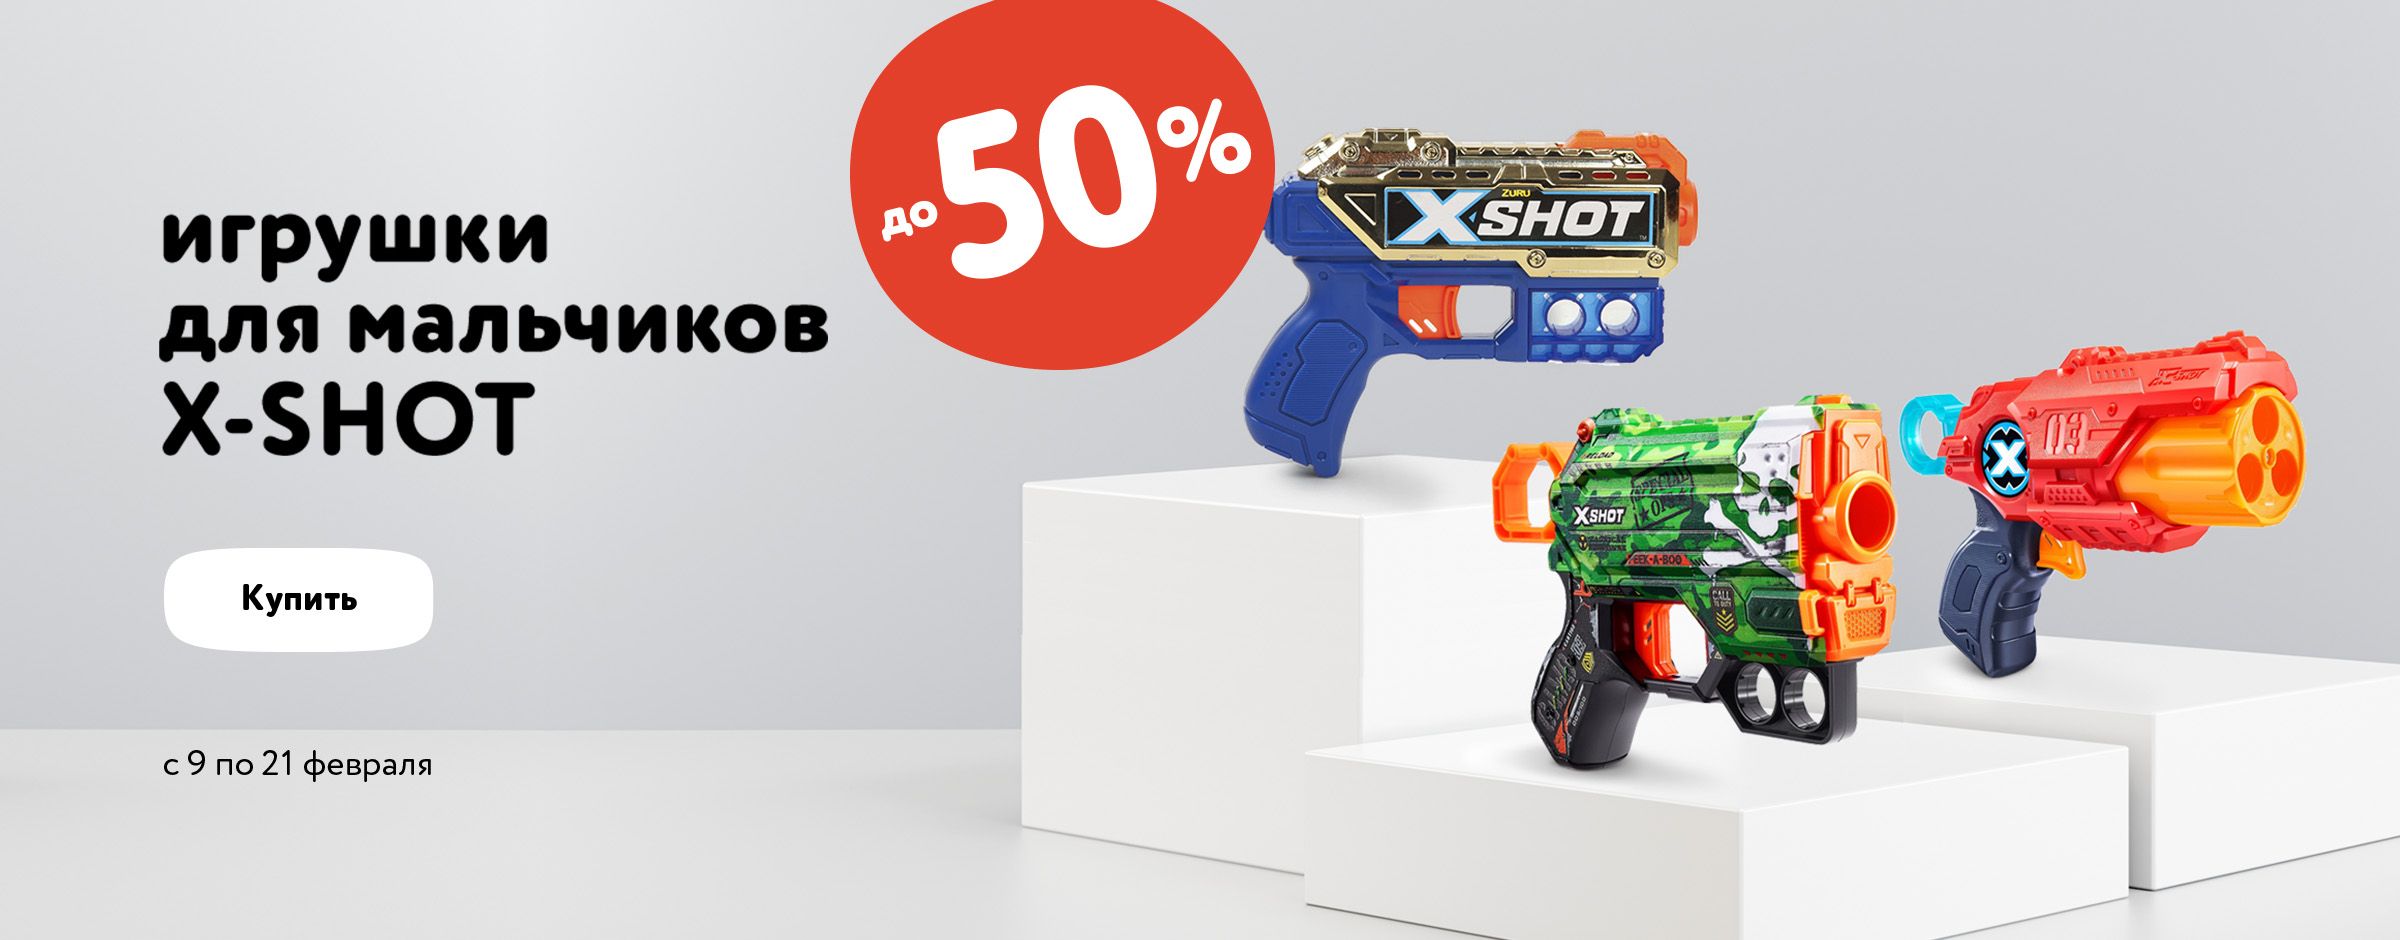 Скидка до 50% на игрушки для мальчиков X-SHOT _карусель +категории